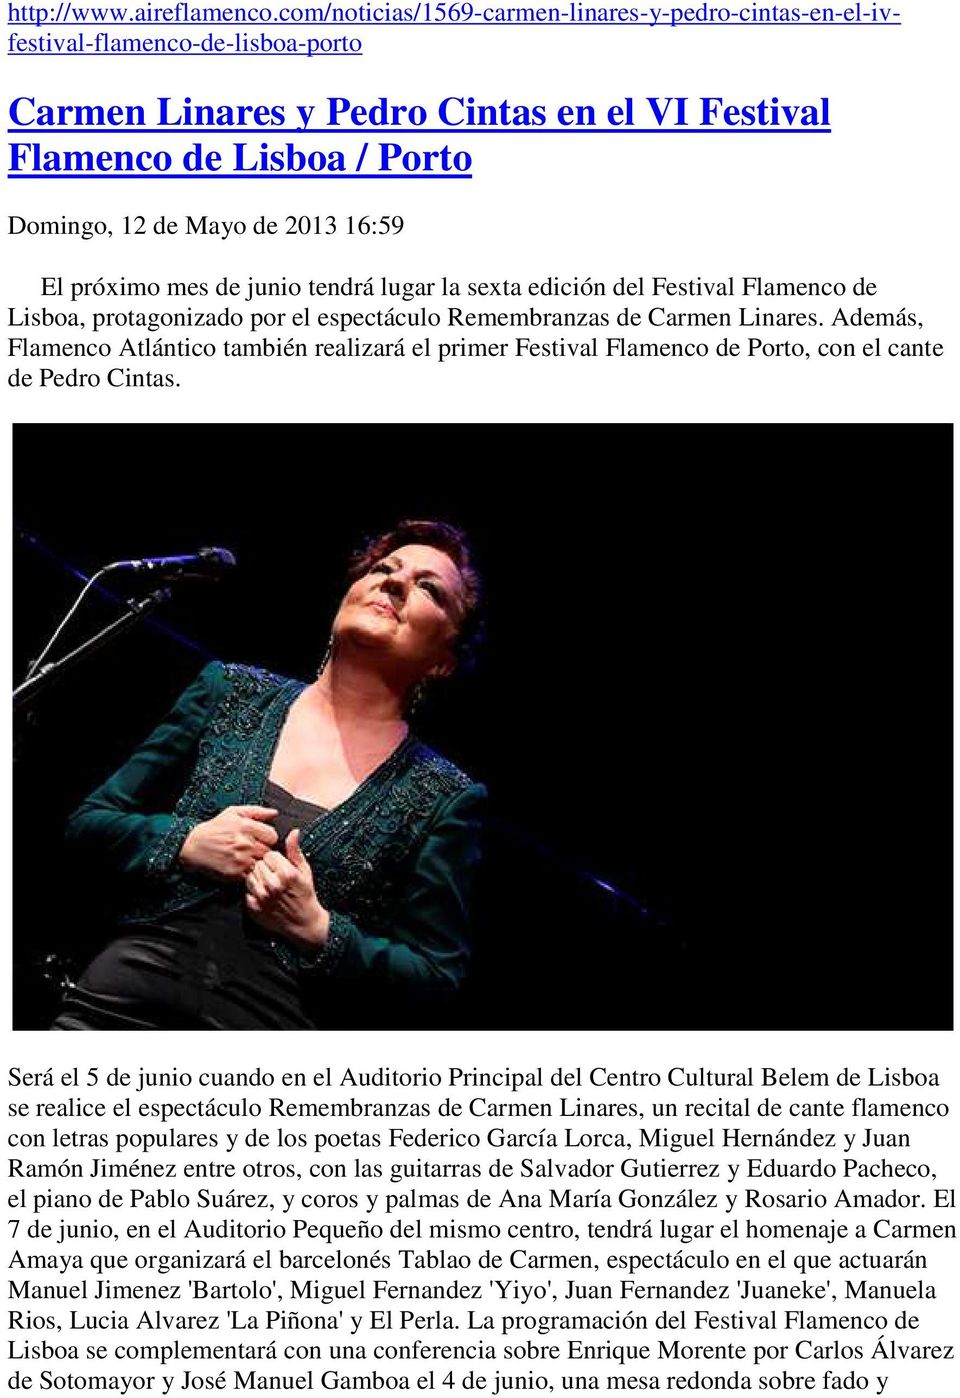 El próximo mes de junio tendrá lugar la sexta edición del Festival Flamenco de Lisboa, protagonizado por el espectáculo Remembranzas de Carmen Linares.